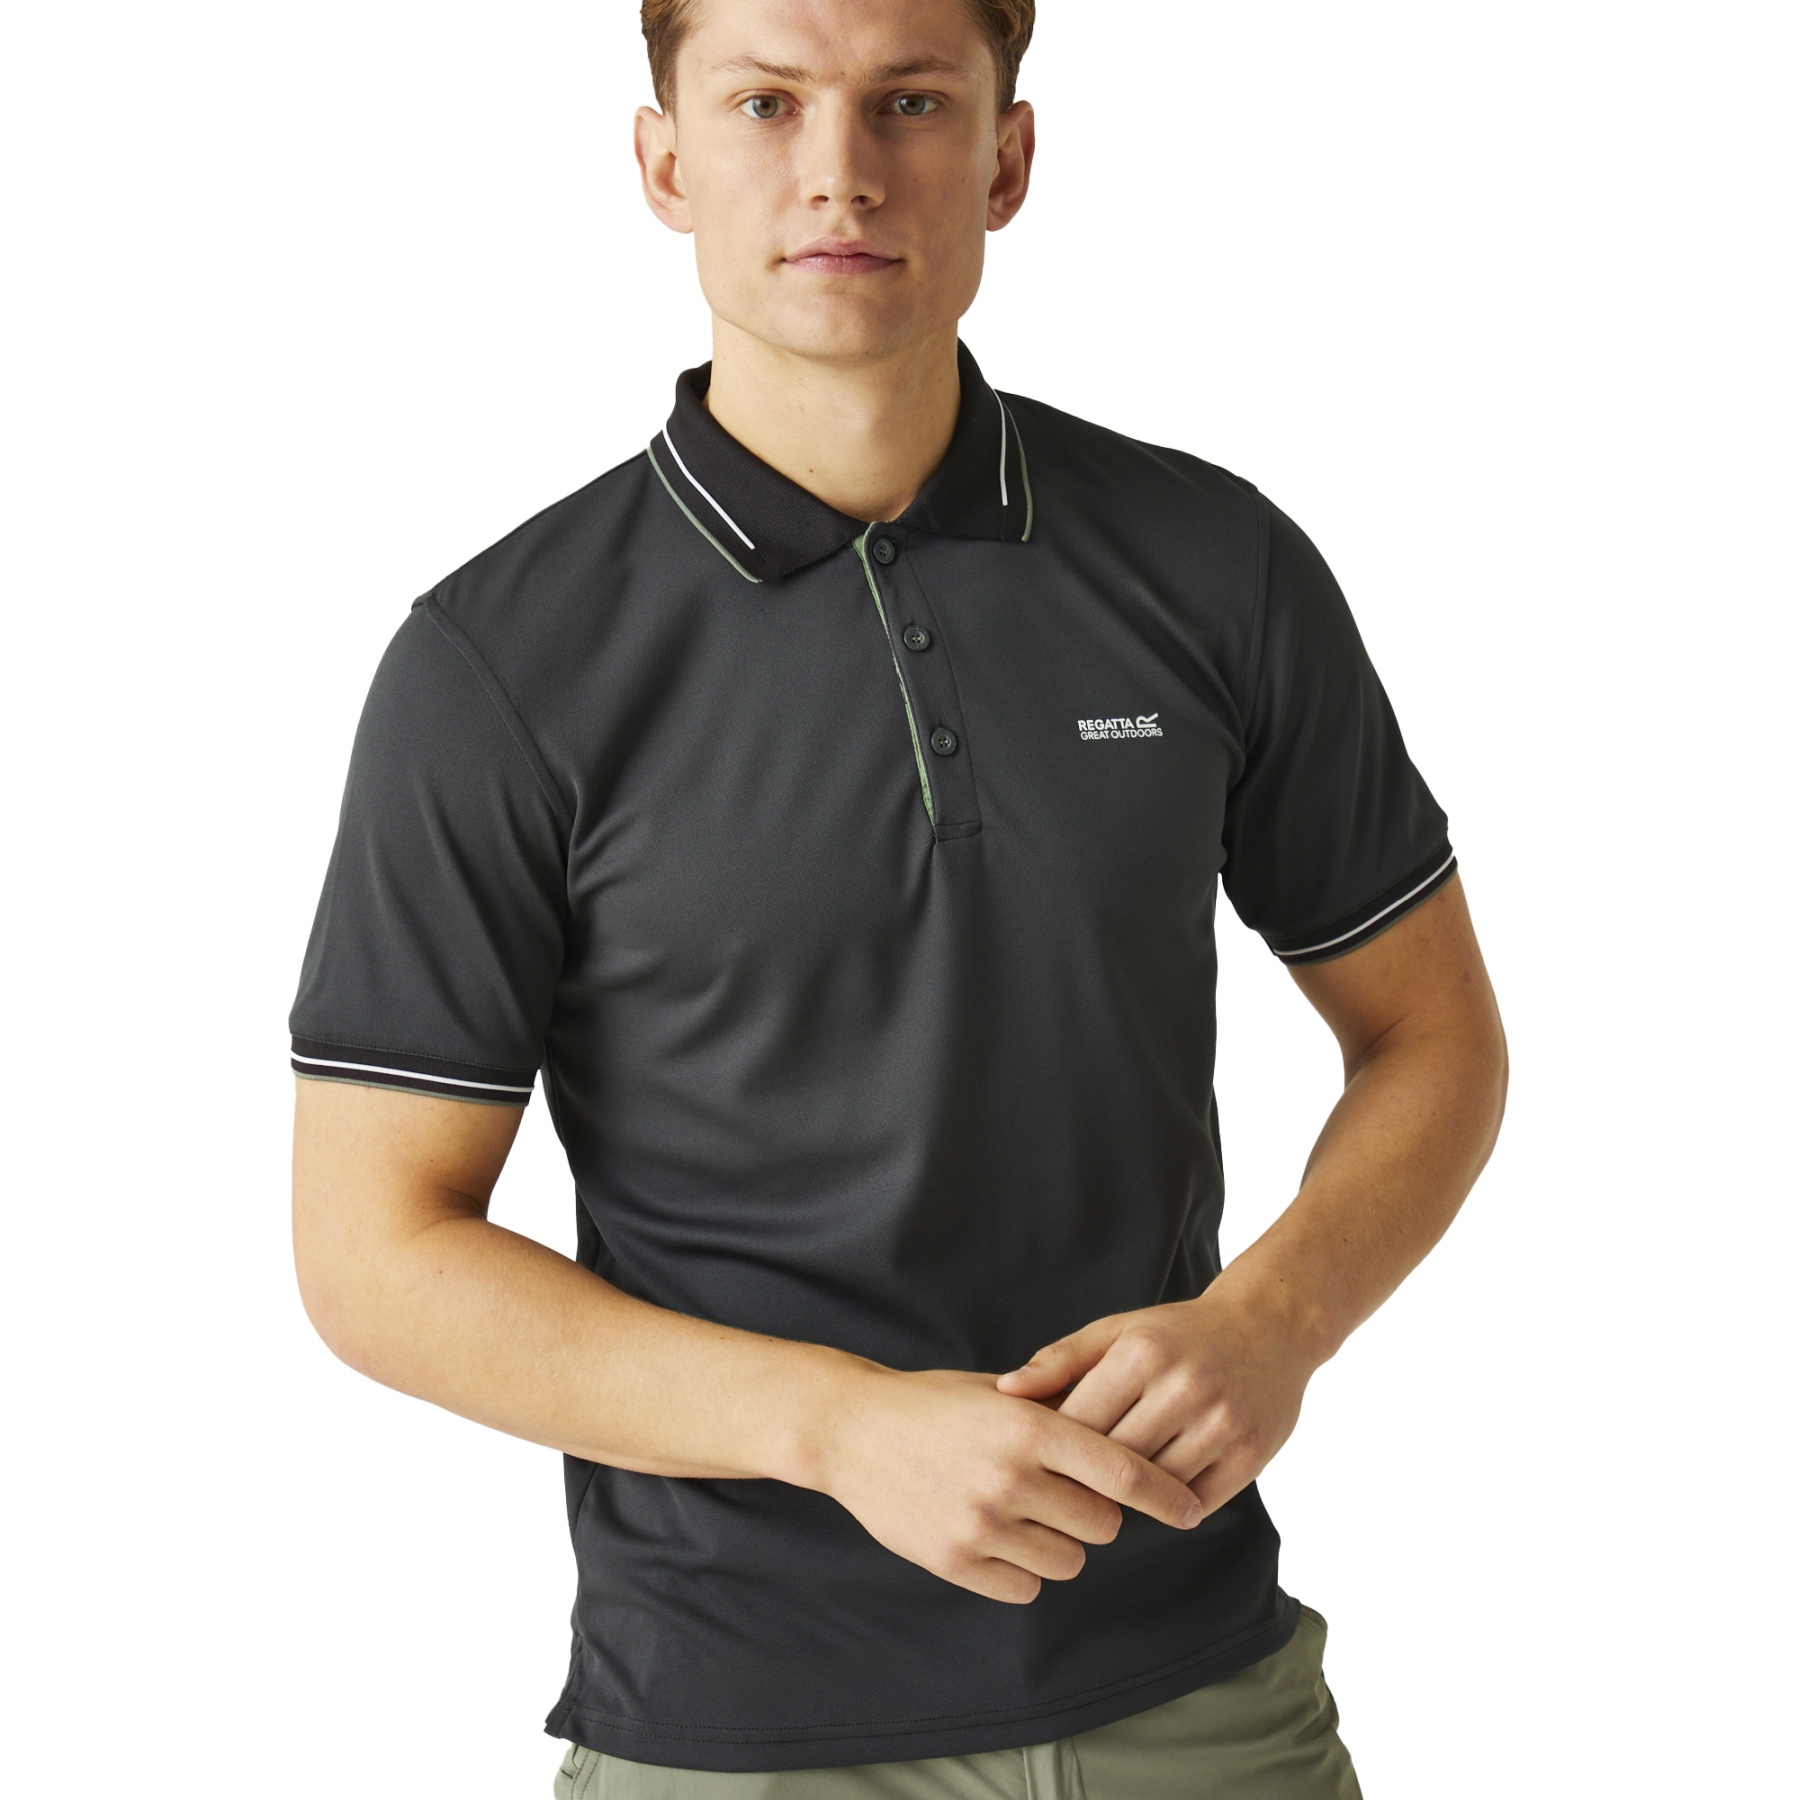 Produktbild von Regatta Oakmont Polo-Shirt Herren - Ash 61I